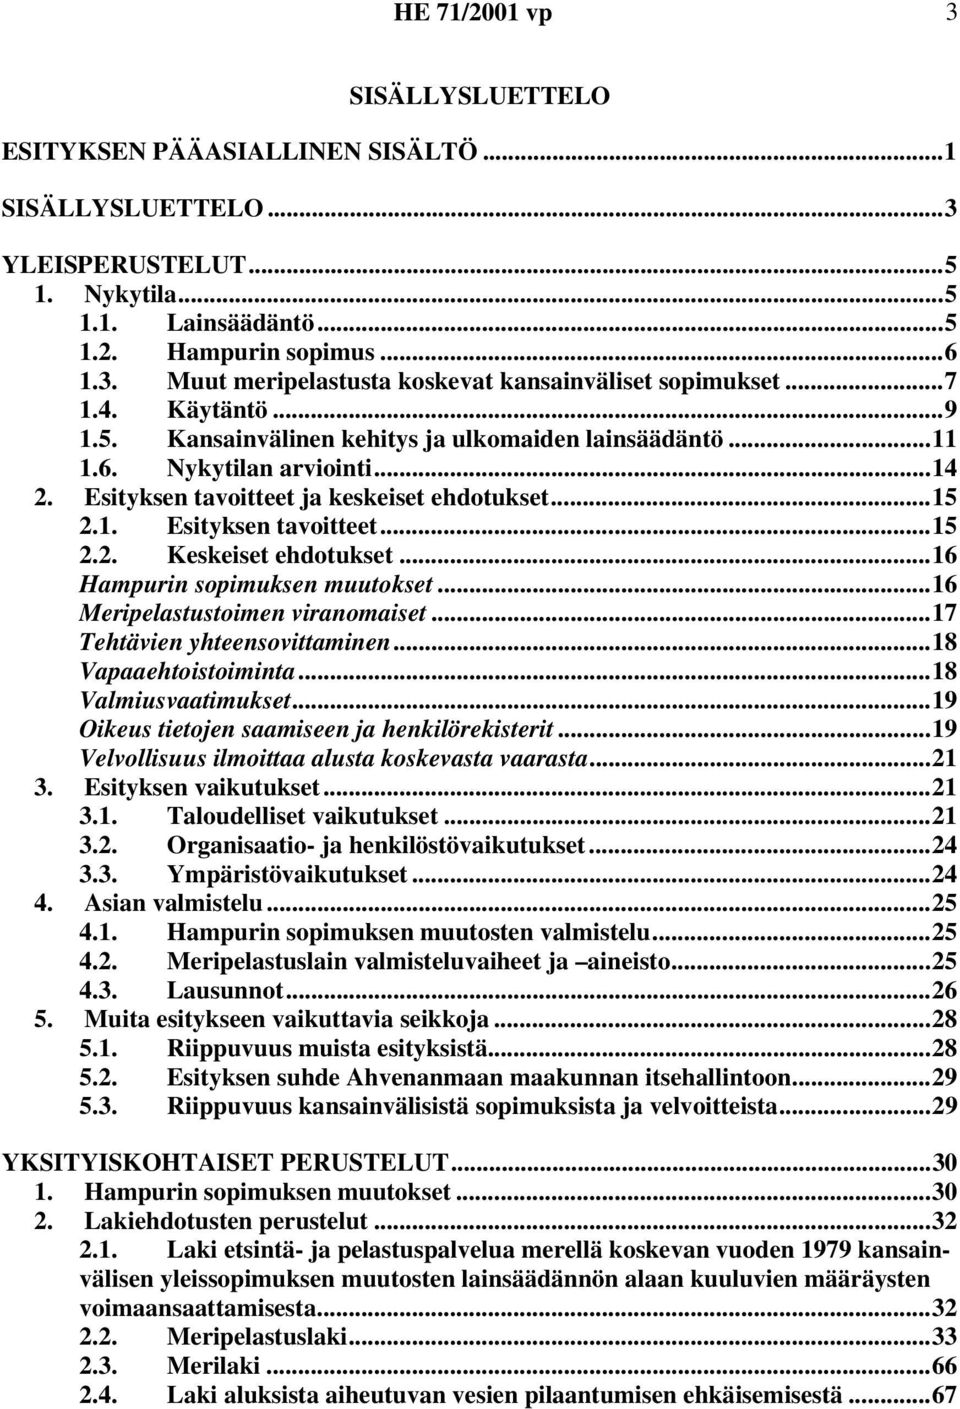 ..16 Hampurin sopimuksen muutokset...16 Meripelastustoimen viranomaiset...17 Tehtävien yhteensovittaminen...18 Vapaaehtoistoiminta...18 Valmiusvaatimukset.